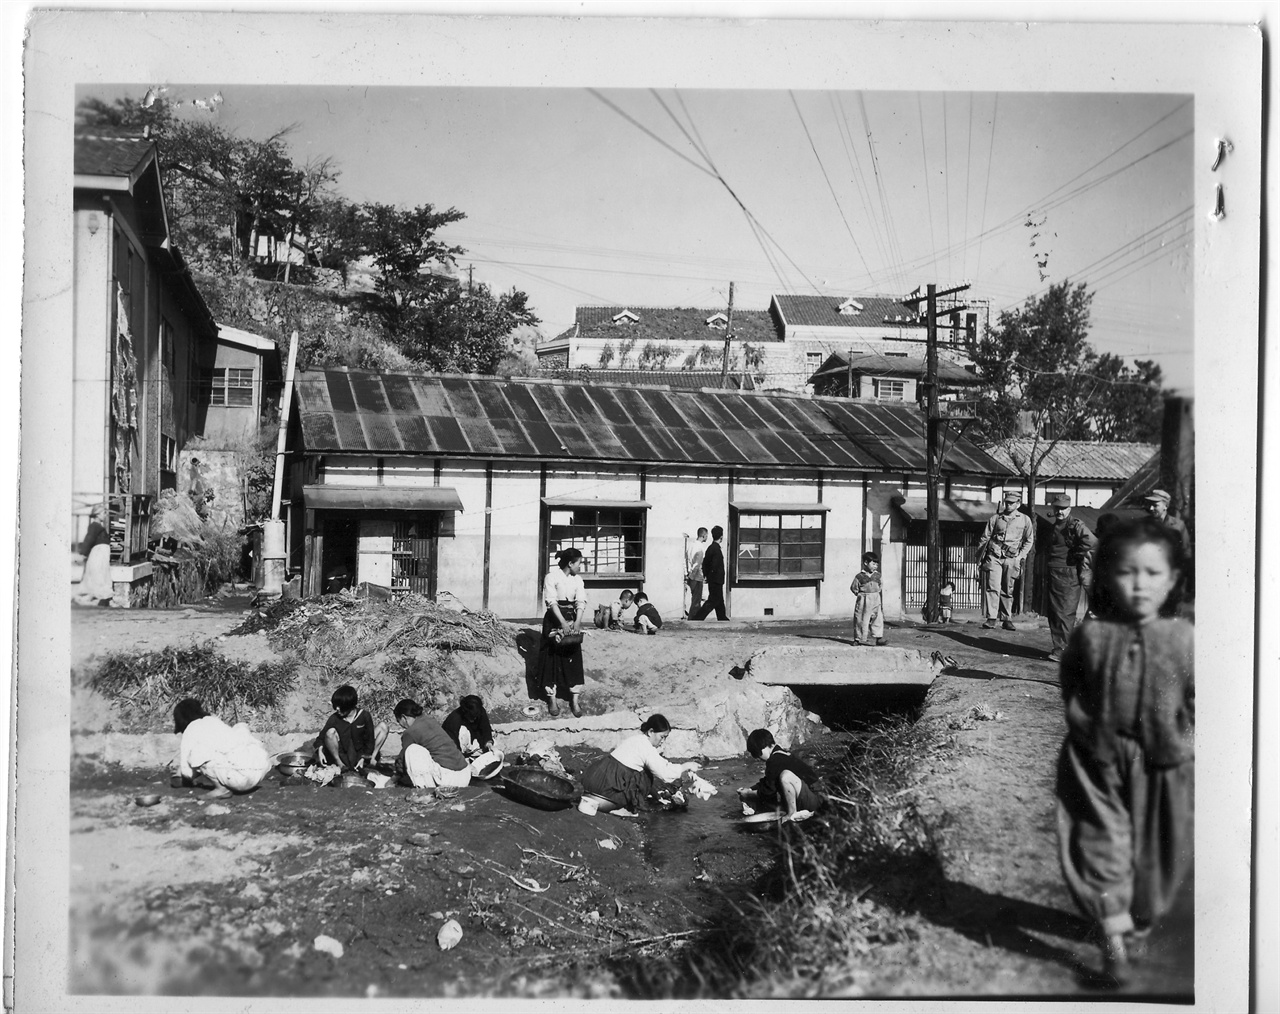 원산, 부녀자들이 동네 냇가에서 빨래를 하고 있다(1950. 11. 1.).